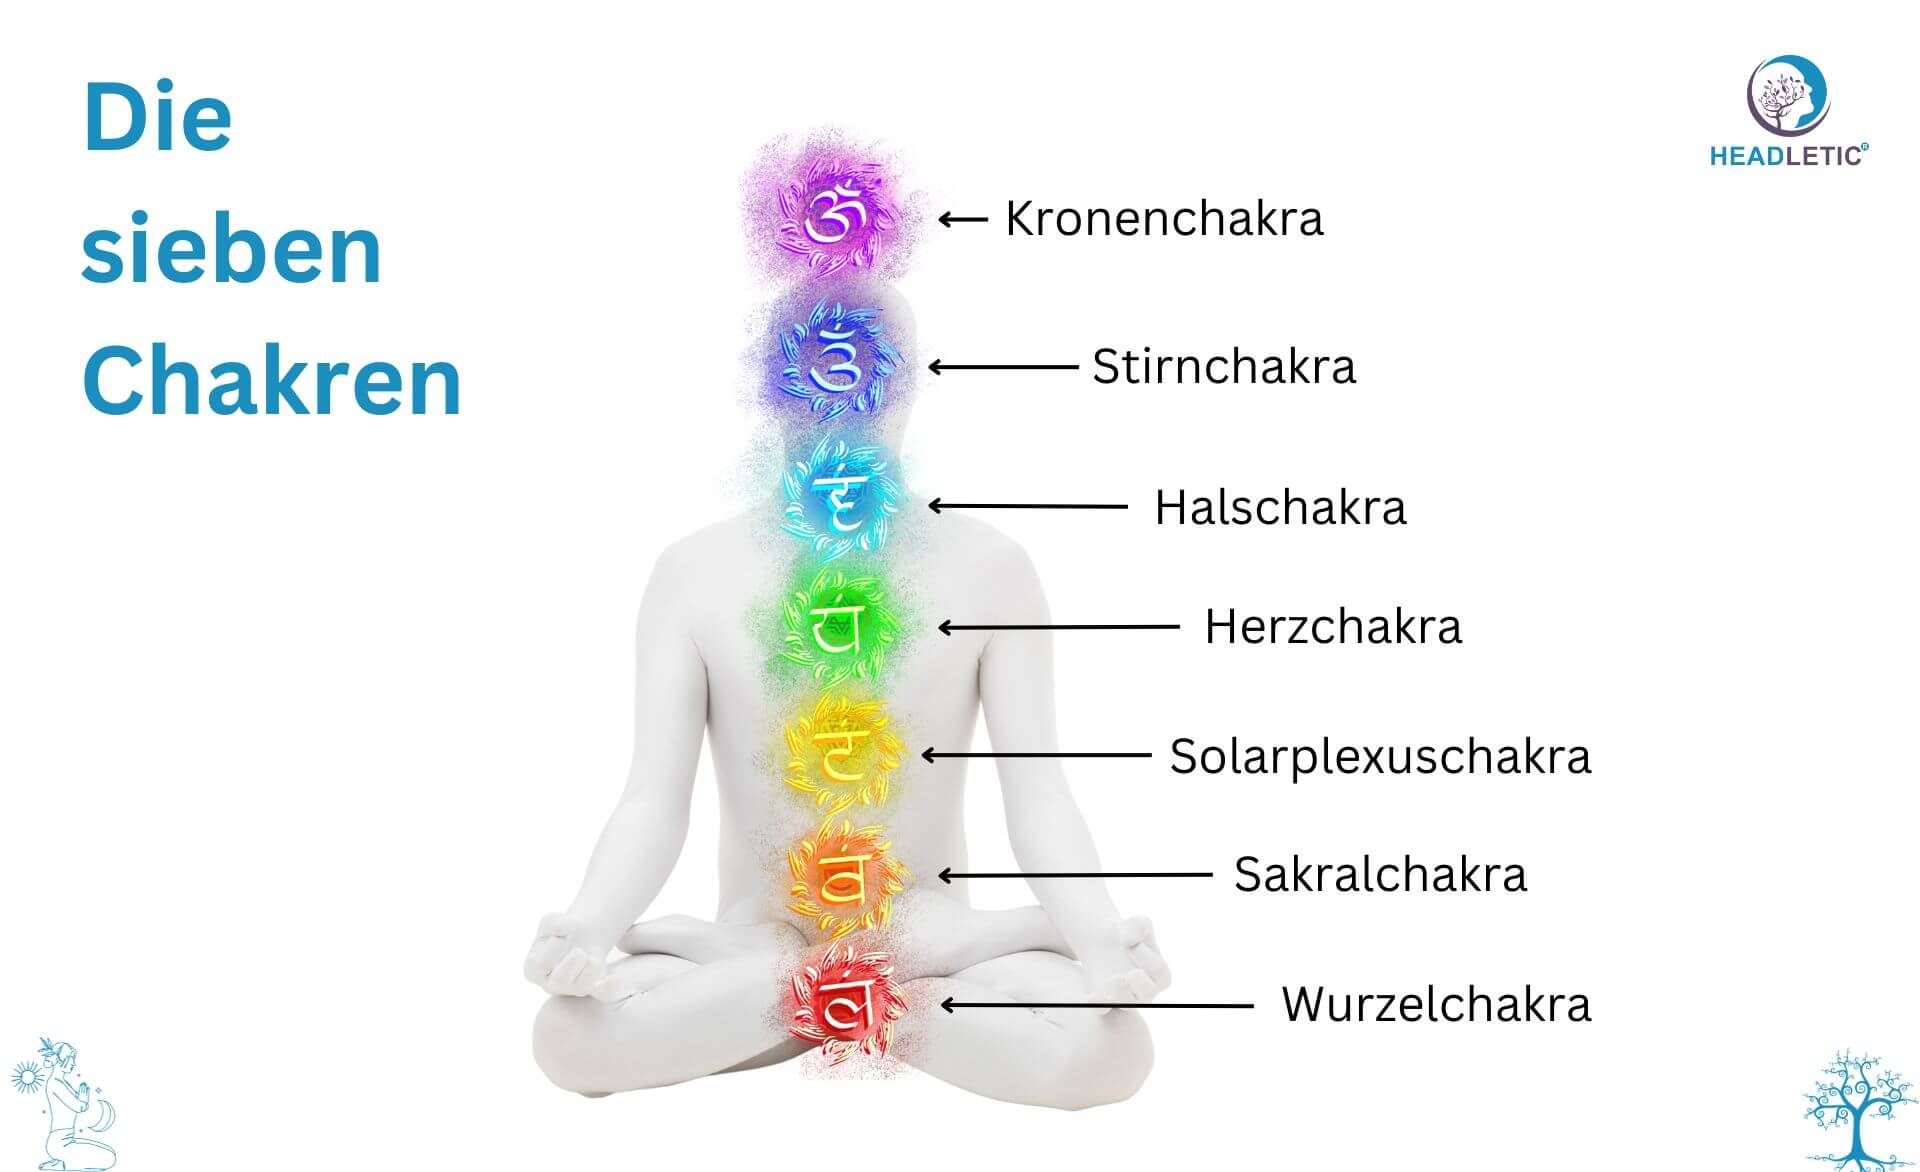 Das Sakralchakra und seine Meditationstechniken sind entscheidende Elemente zum Verständnis der sieben Chakren des menschlichen Körpers.